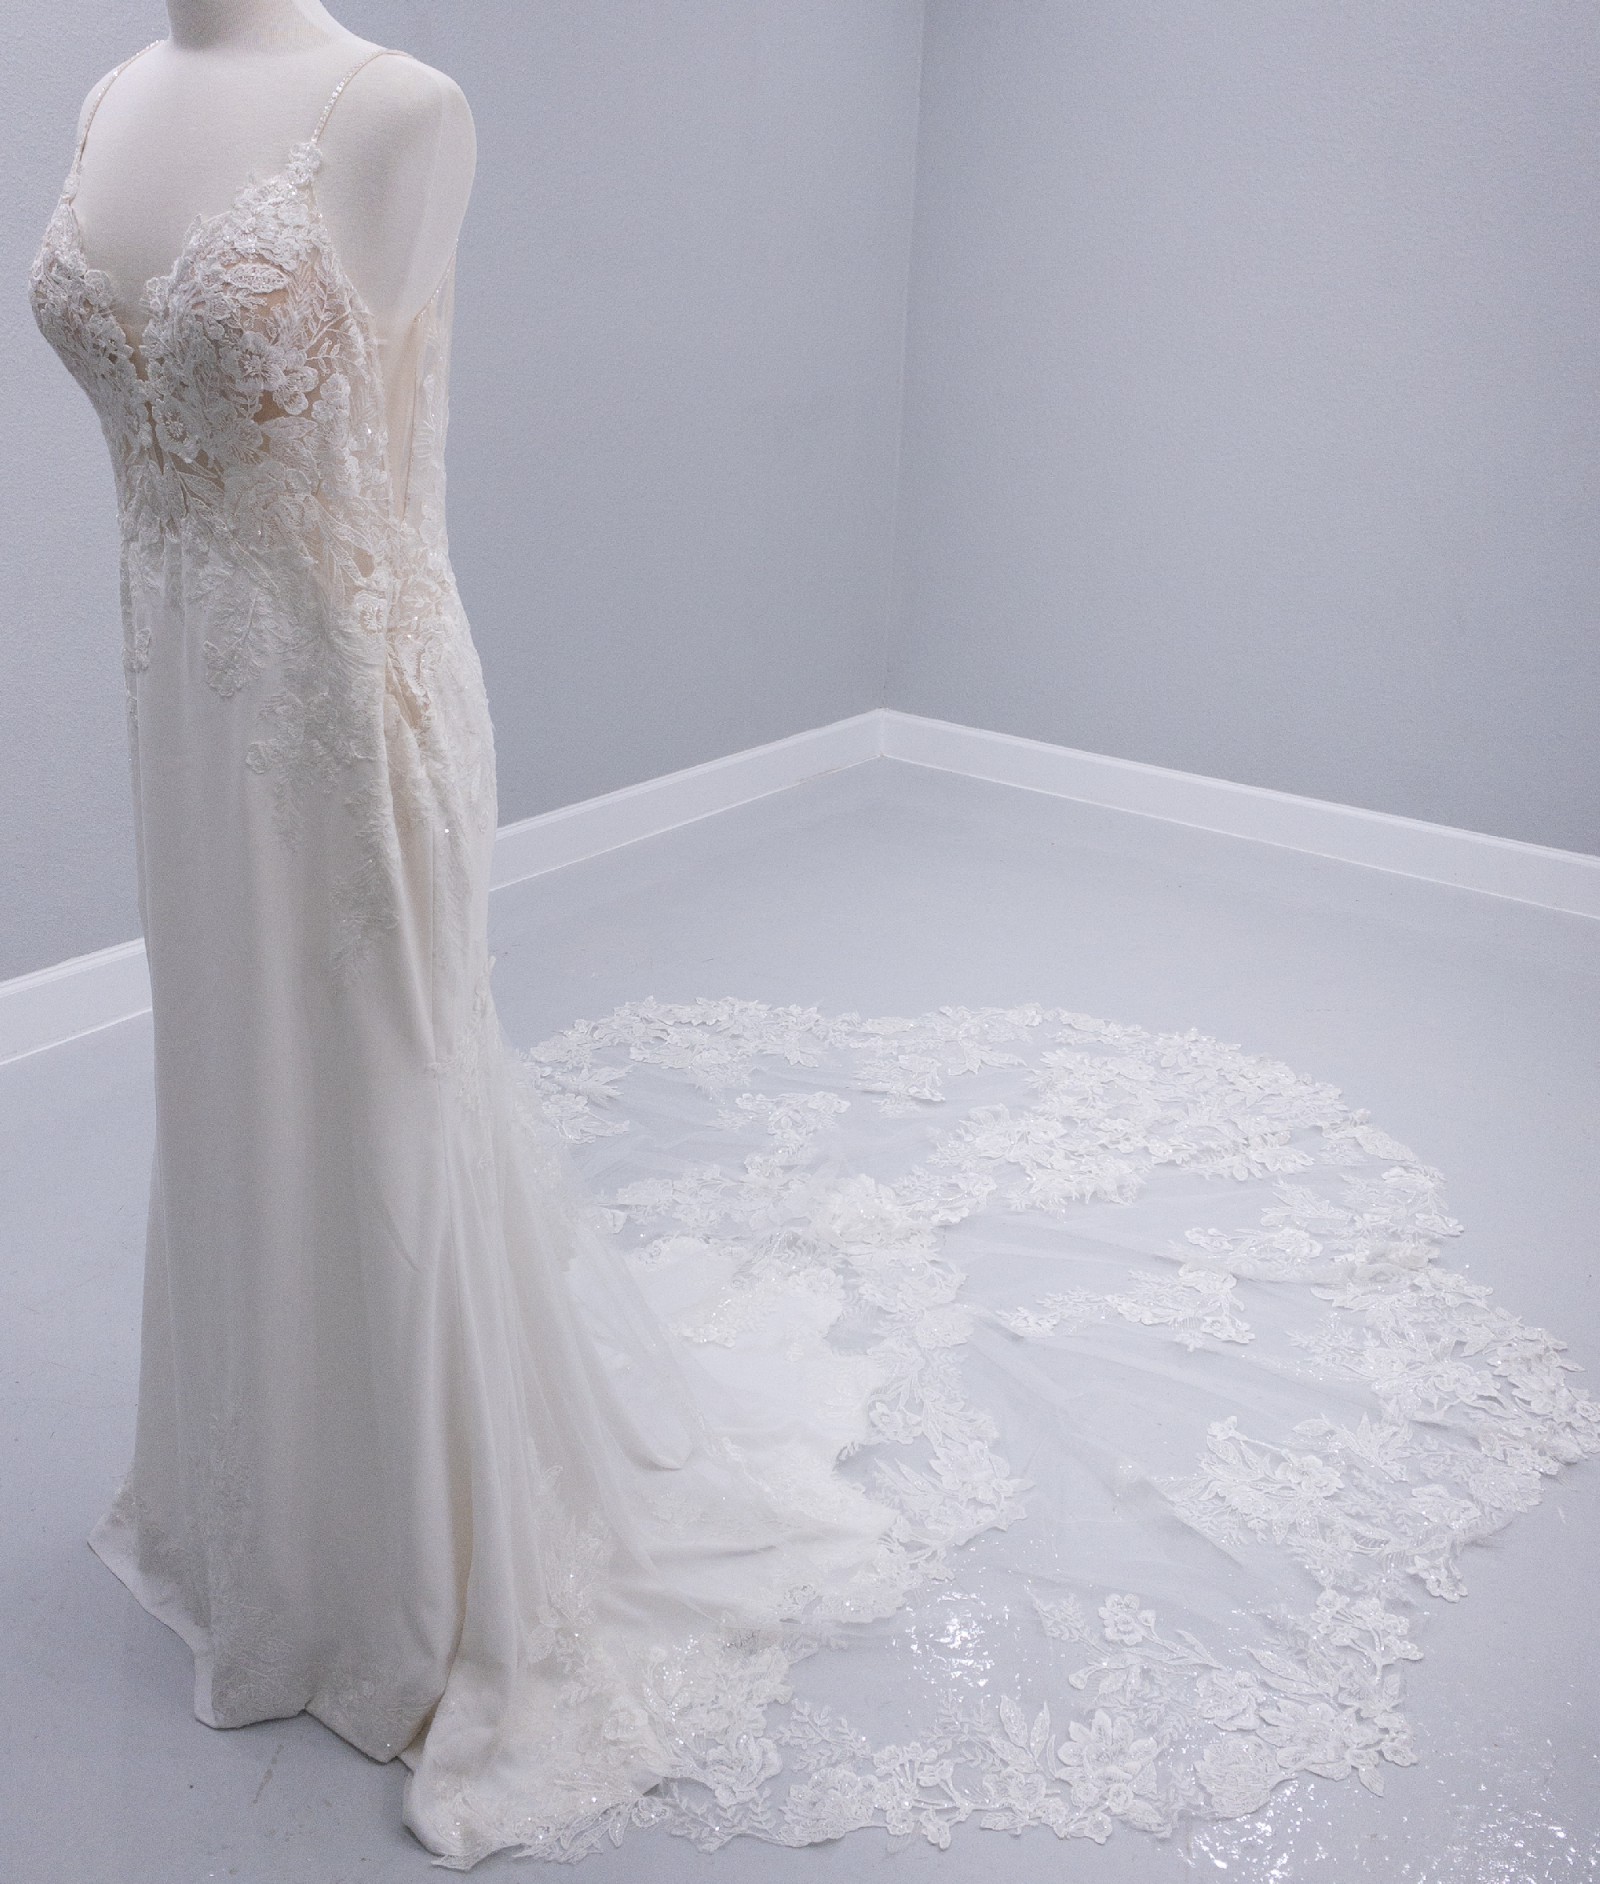 Enzoani Pallas Sample Wedding Dress Save 75% - Stillwhite